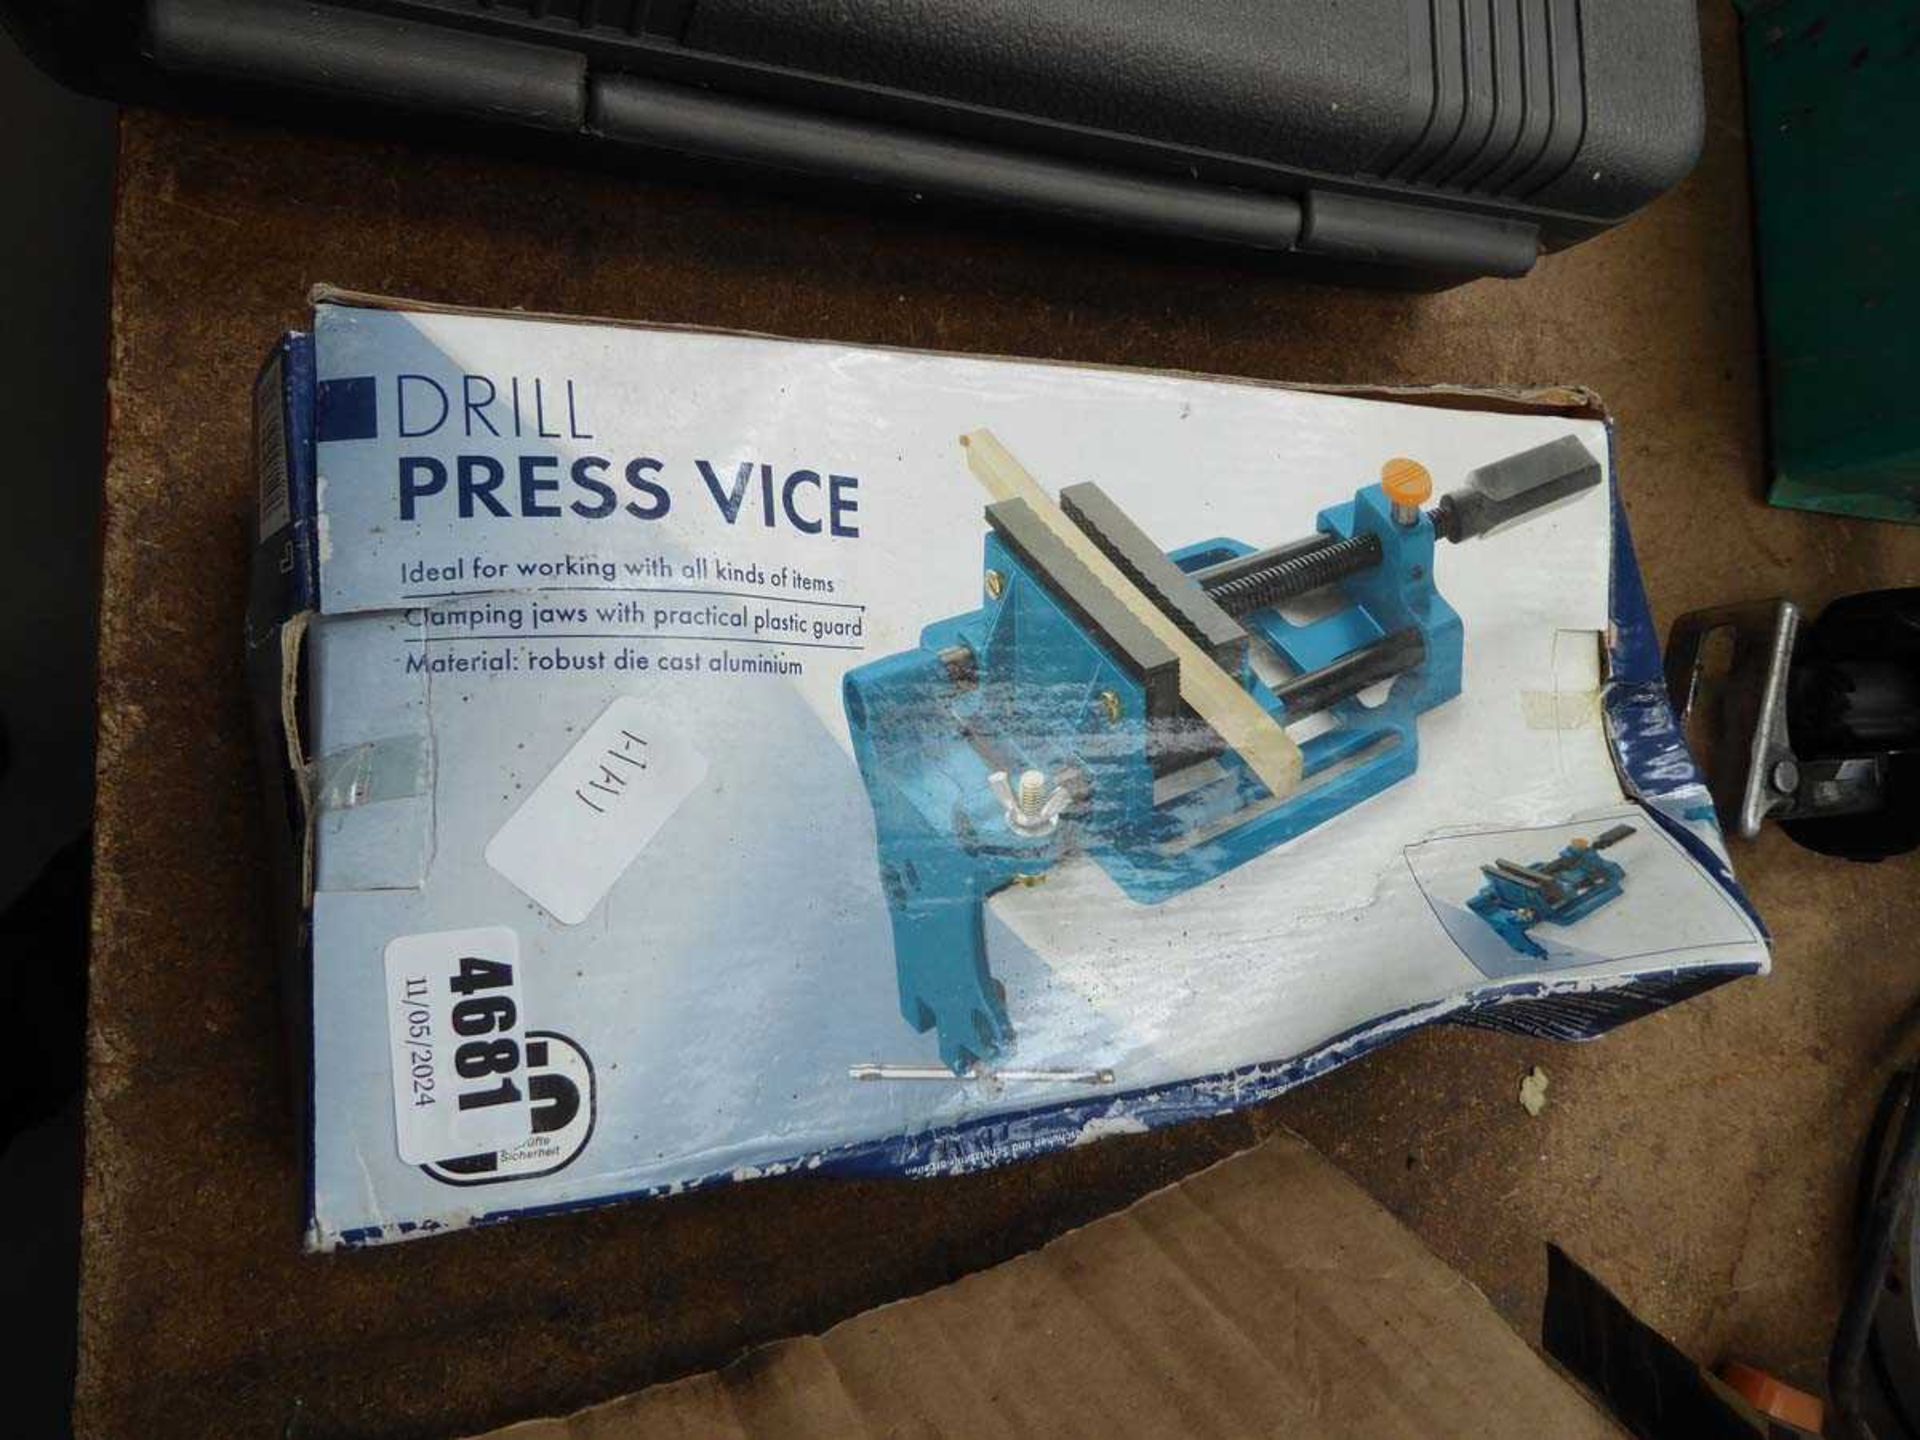 Boxed drill press vice